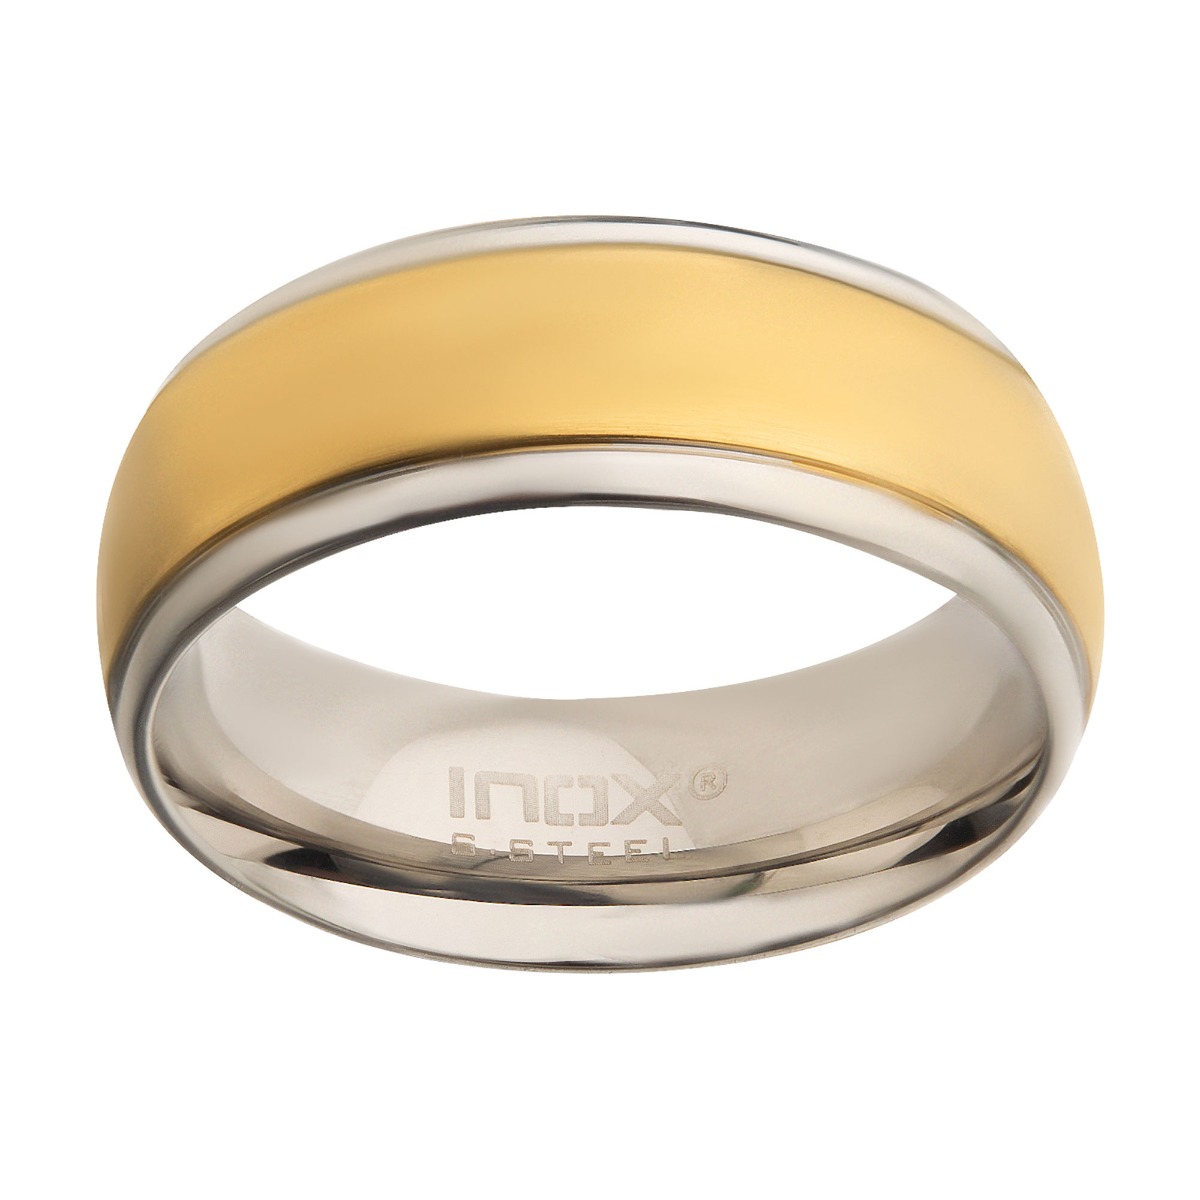 Steel & Gold Plated Patterned Design Ring Image 2 K. Martin Jeweler Dodge City, KS